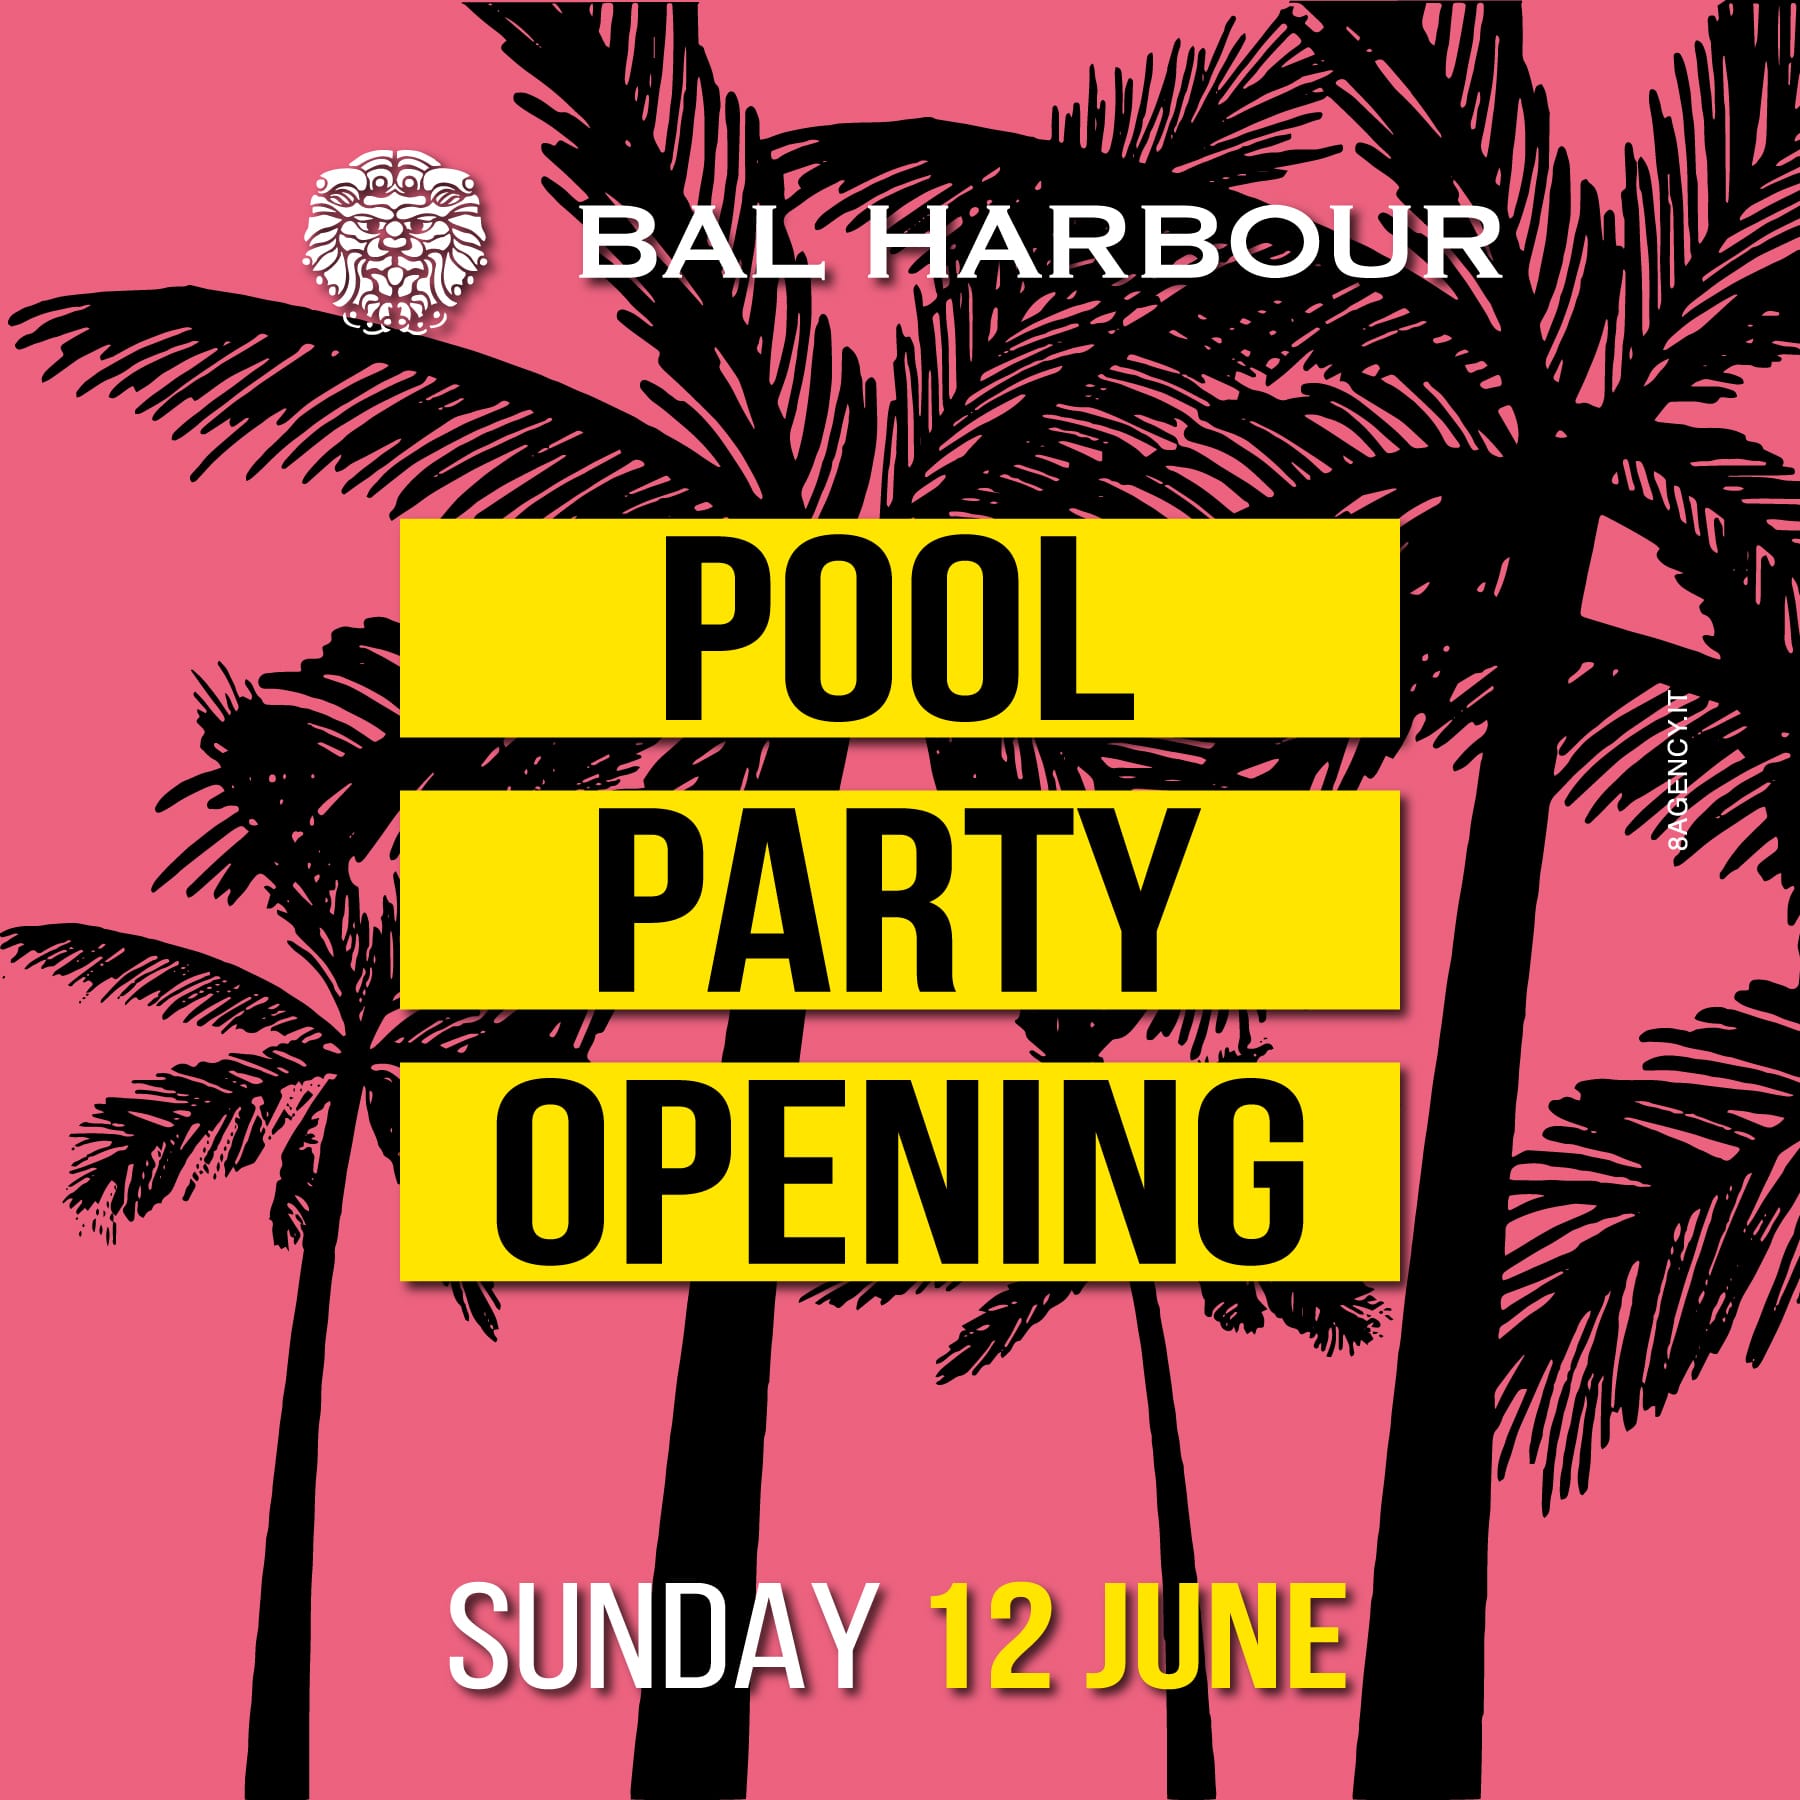 Inaugurazione Pool Party Bal Harbour Estate 2022 - Domenica 12 Giugno